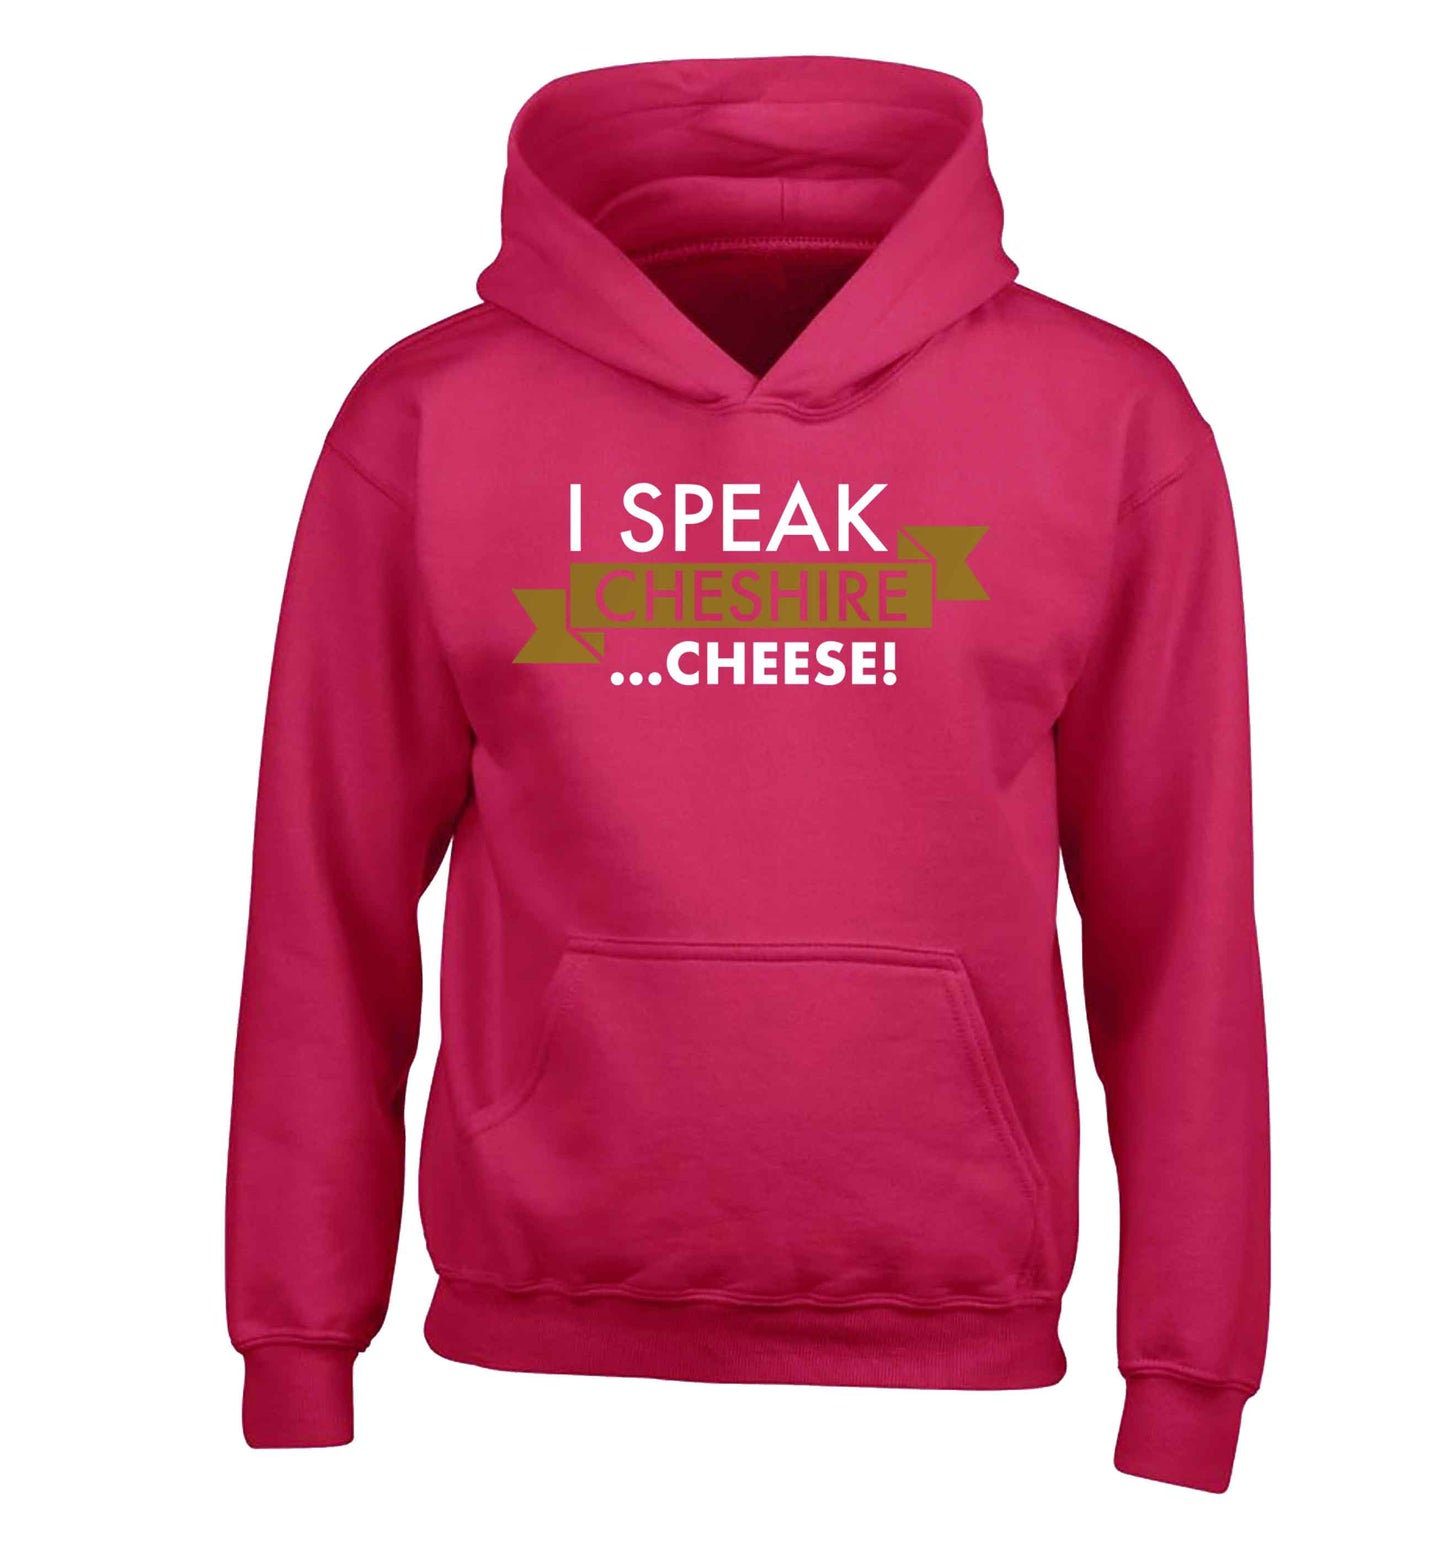 I speak Cheshire cheese children's pink hoodie 12-13 Years